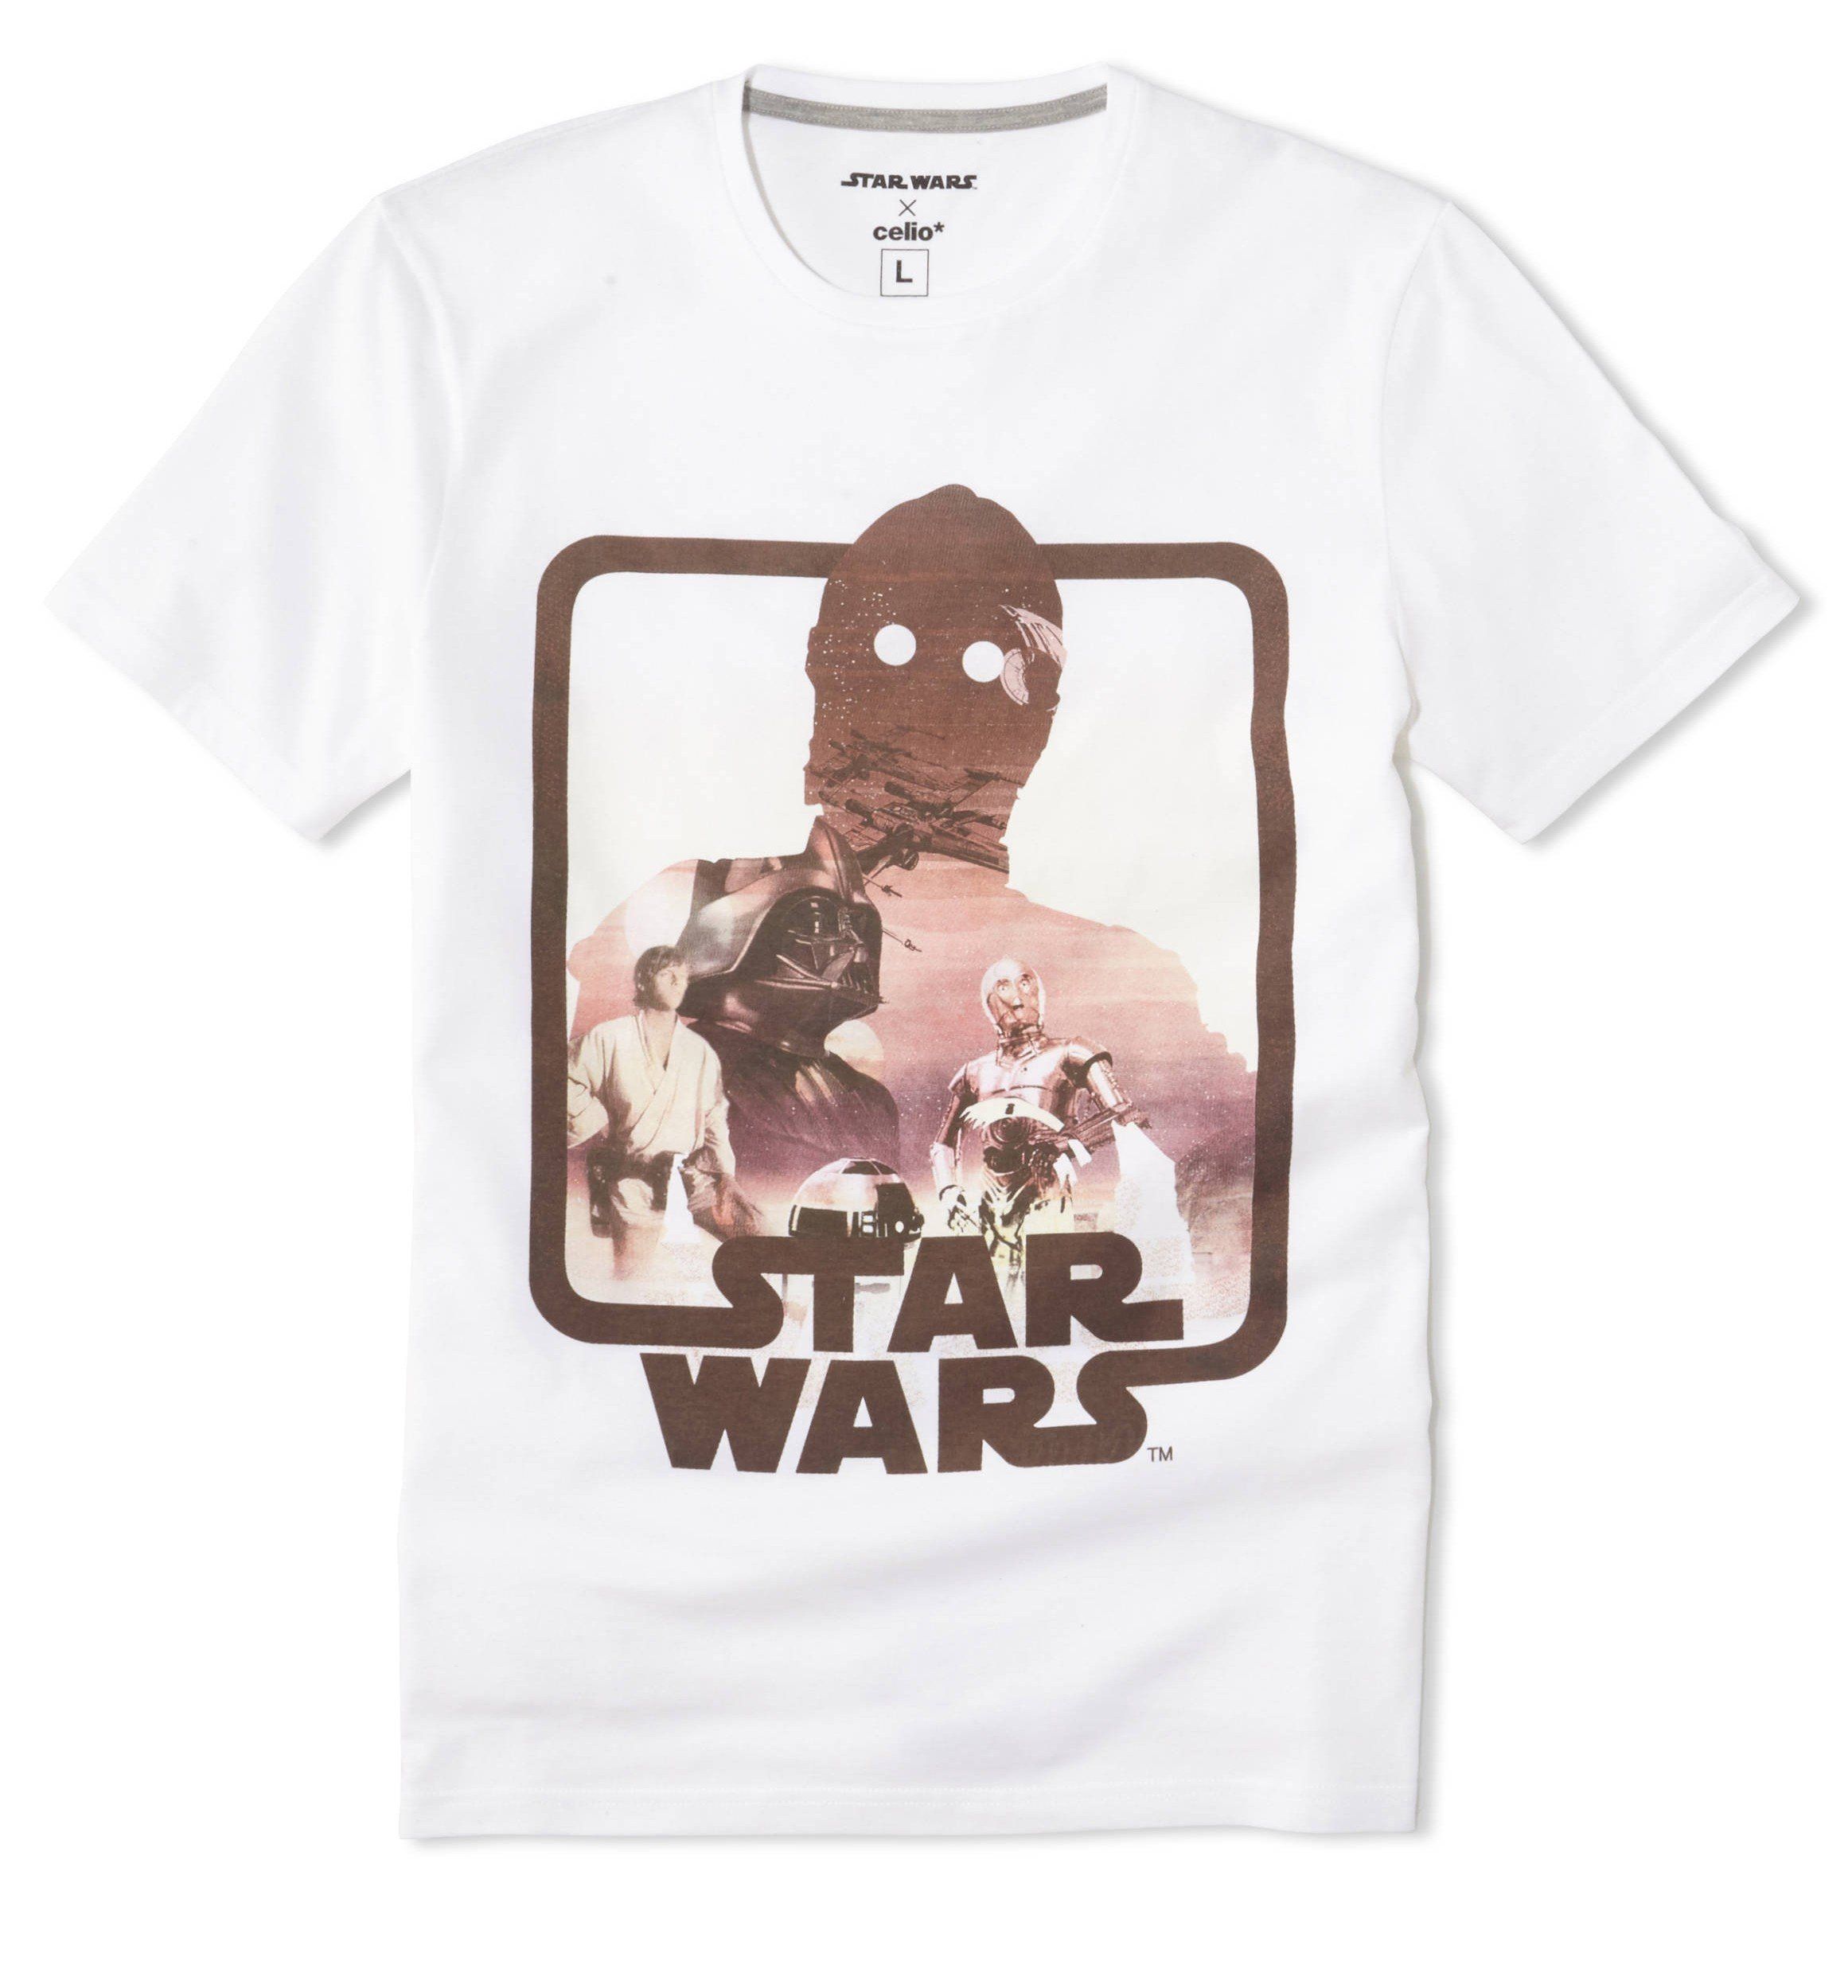 Celio* lance une superbe collection de T-Shirts et de goodies Star Wars #6